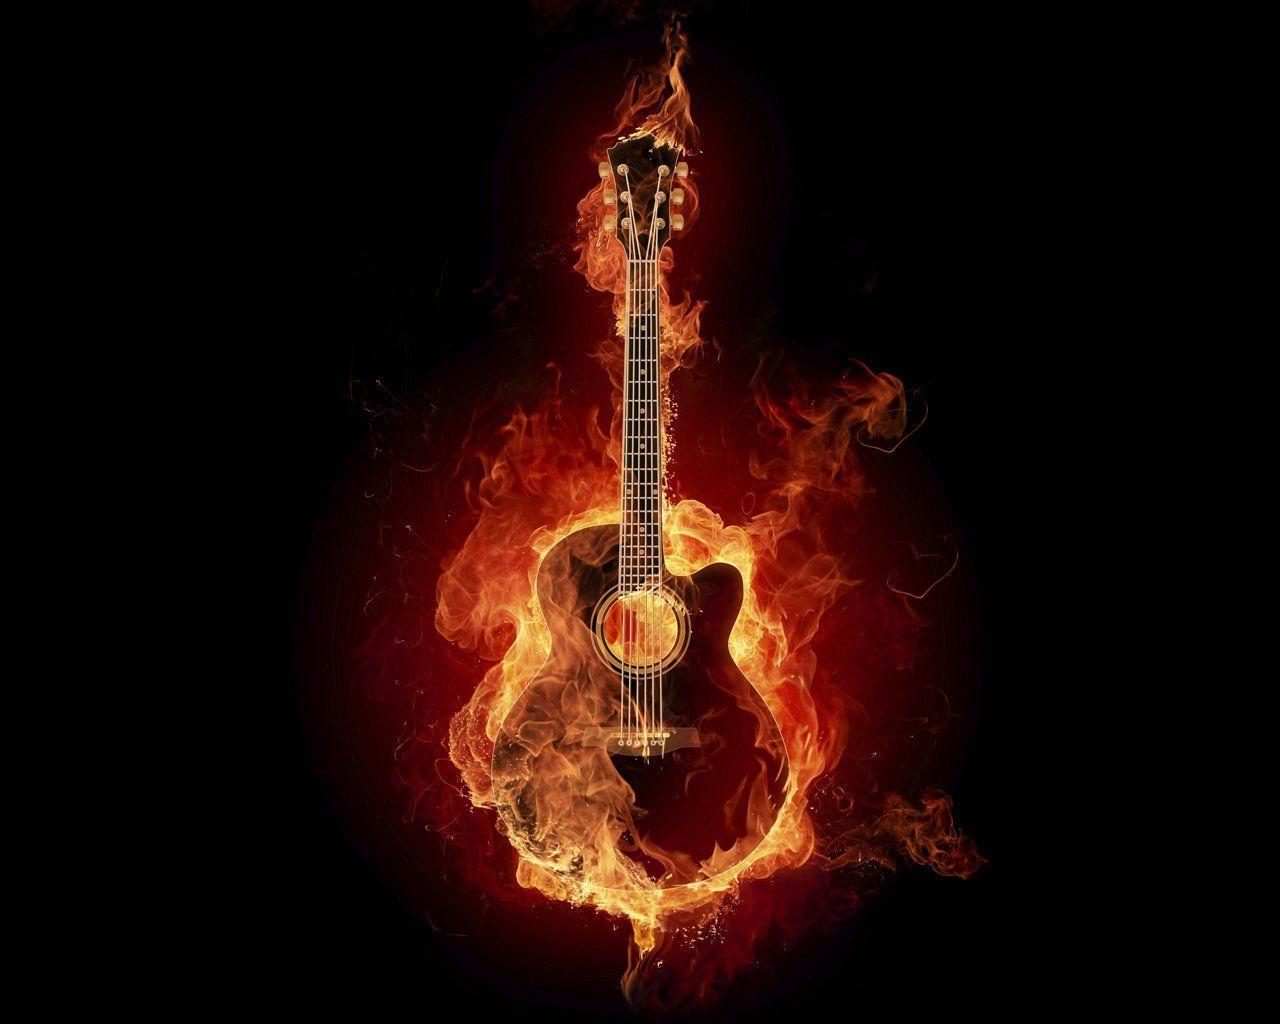 Burning Guitar Wallpaper Free Burning Guitar Background